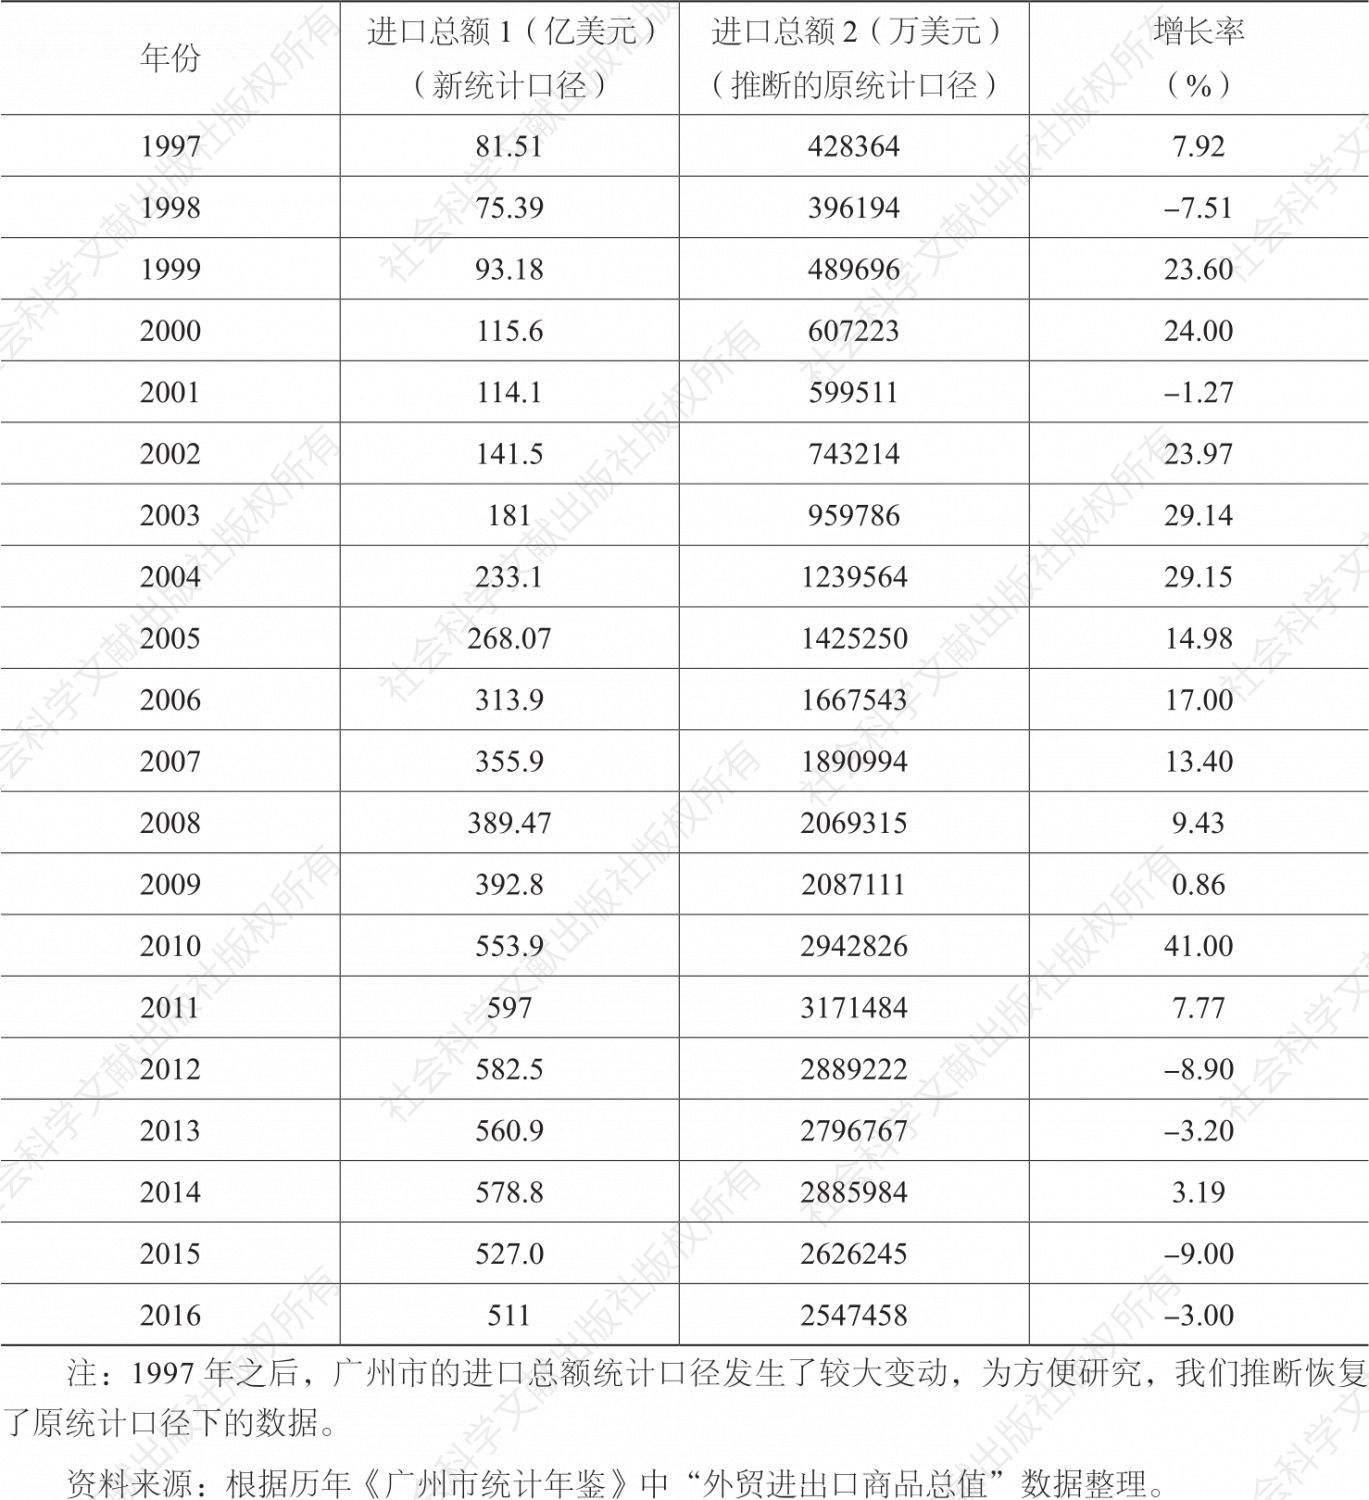 表4-2 1997～2016年广州市进口总额及增长率